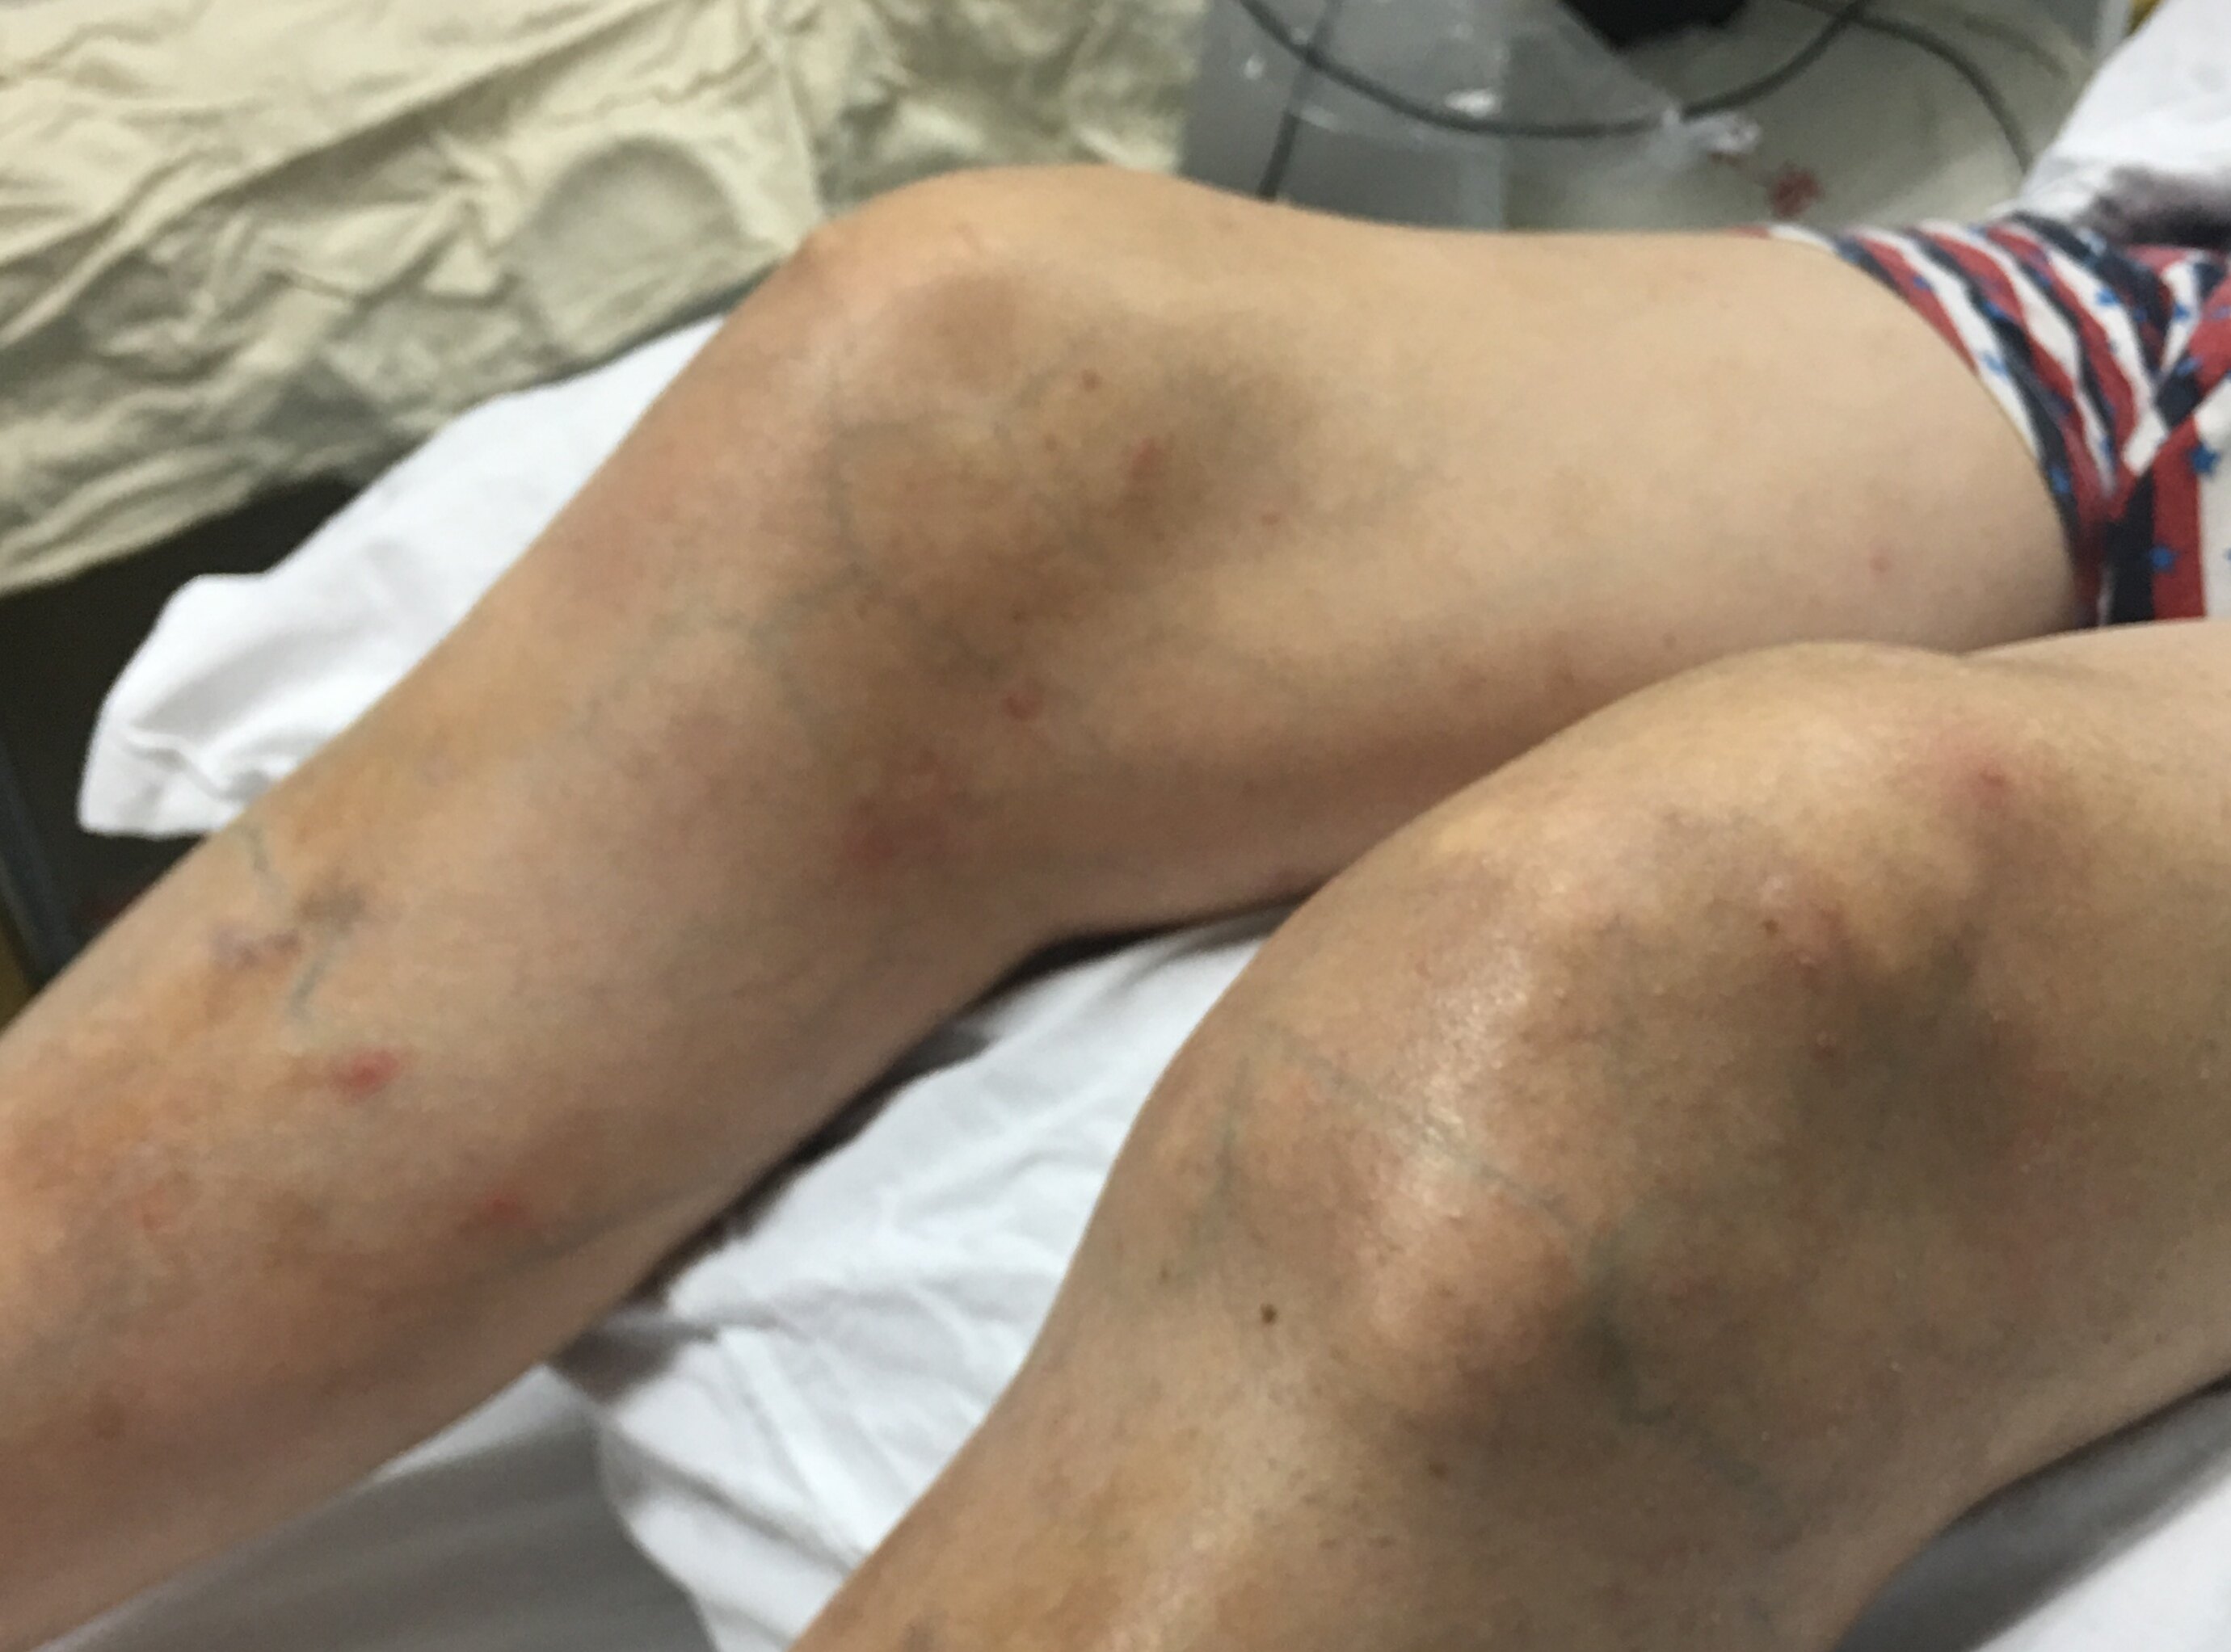 患者双膝关节已经变形,肉眼可见皮下明显的尿酸盐沉积形成的痛风石,膝